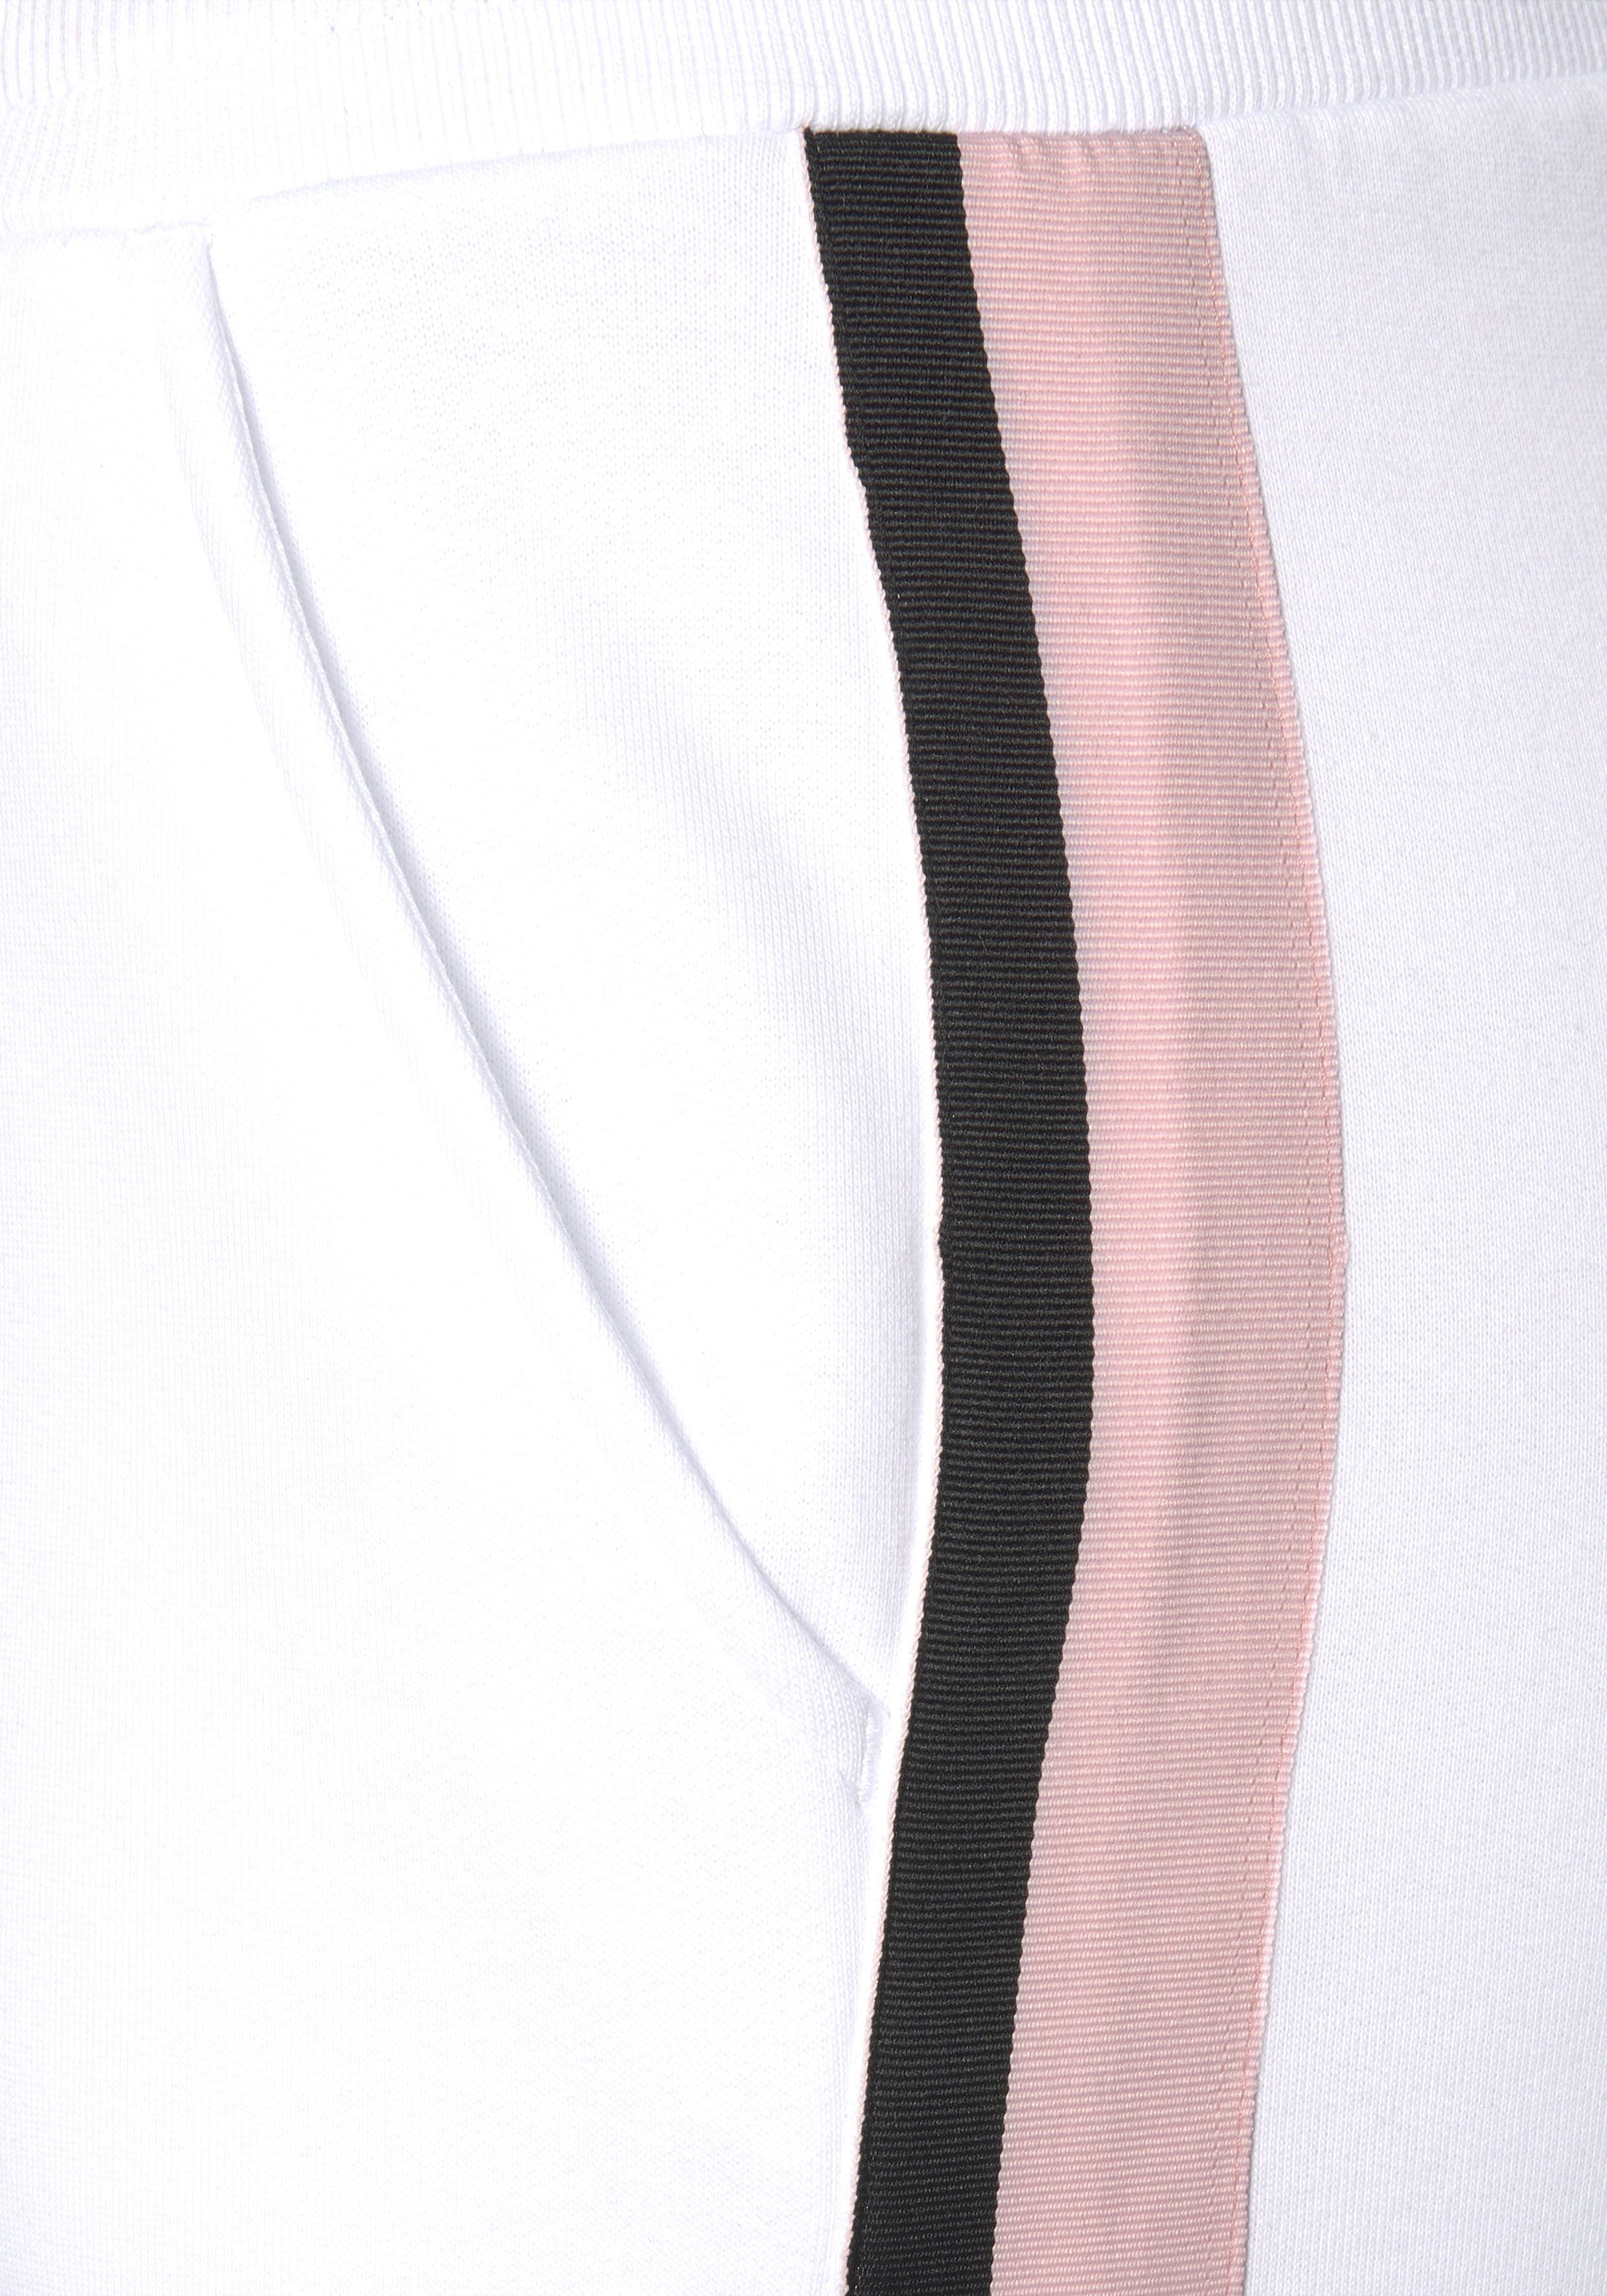 Bench. Relaxhose und Streifen, bedruckten Loungeanzug mit Bändern seitlichen white